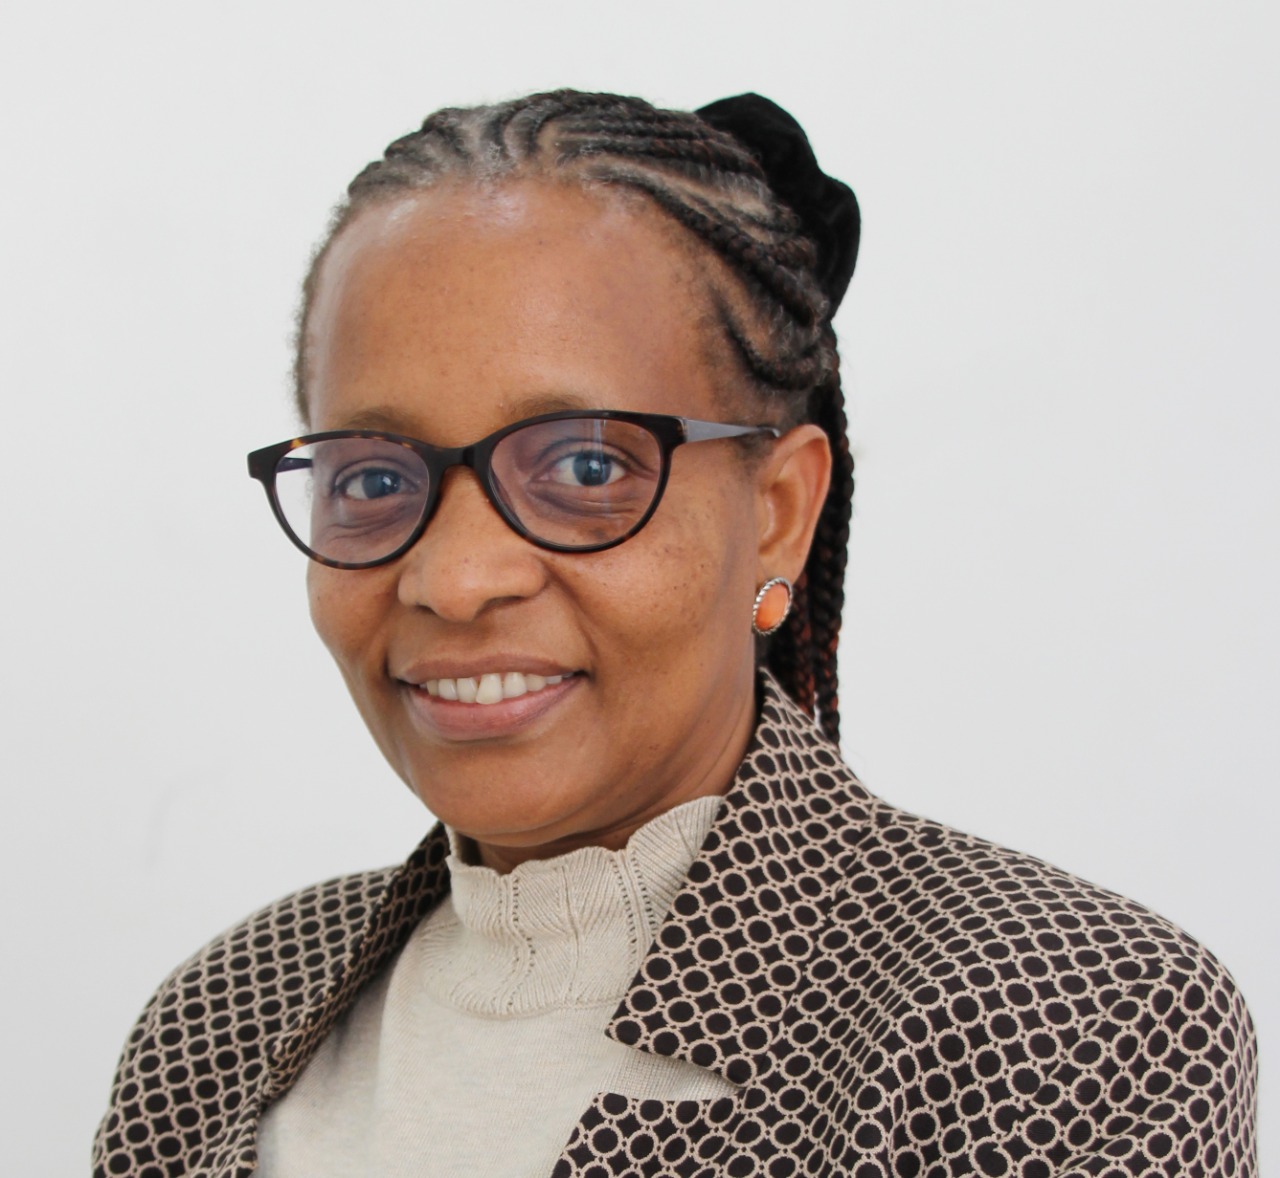 Eng. Clemencia Mwamburi